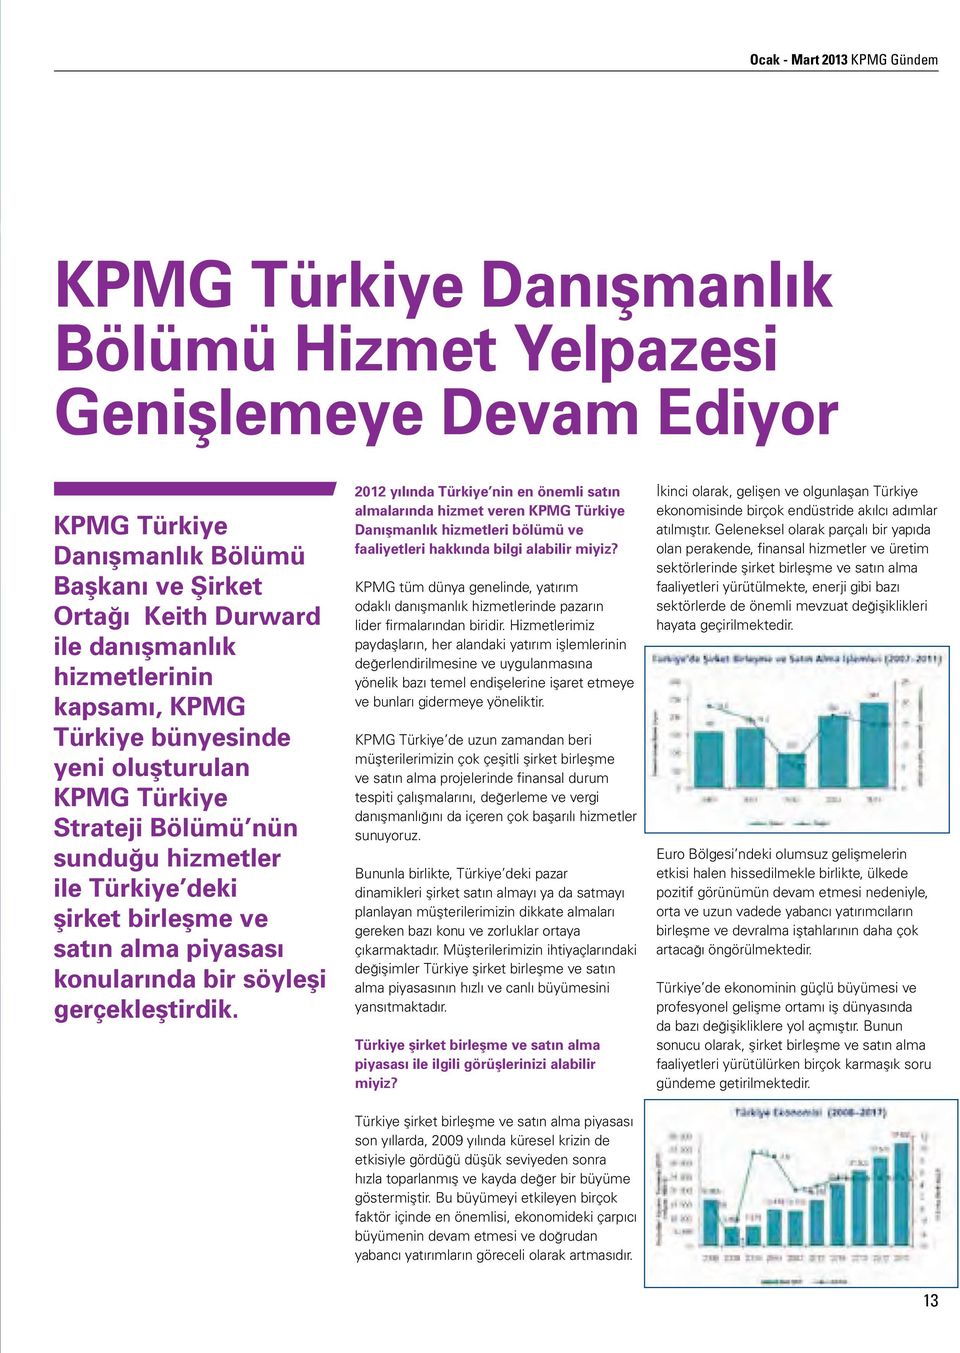 gerçekleştirdik. 2012 yılında Türkiye nin en önemli satın almalarında hizmet veren KPMG Türkiye Danışmanlık hizmetleri bölümü ve faaliyetleri hakkında bilgi alabilir miyiz?